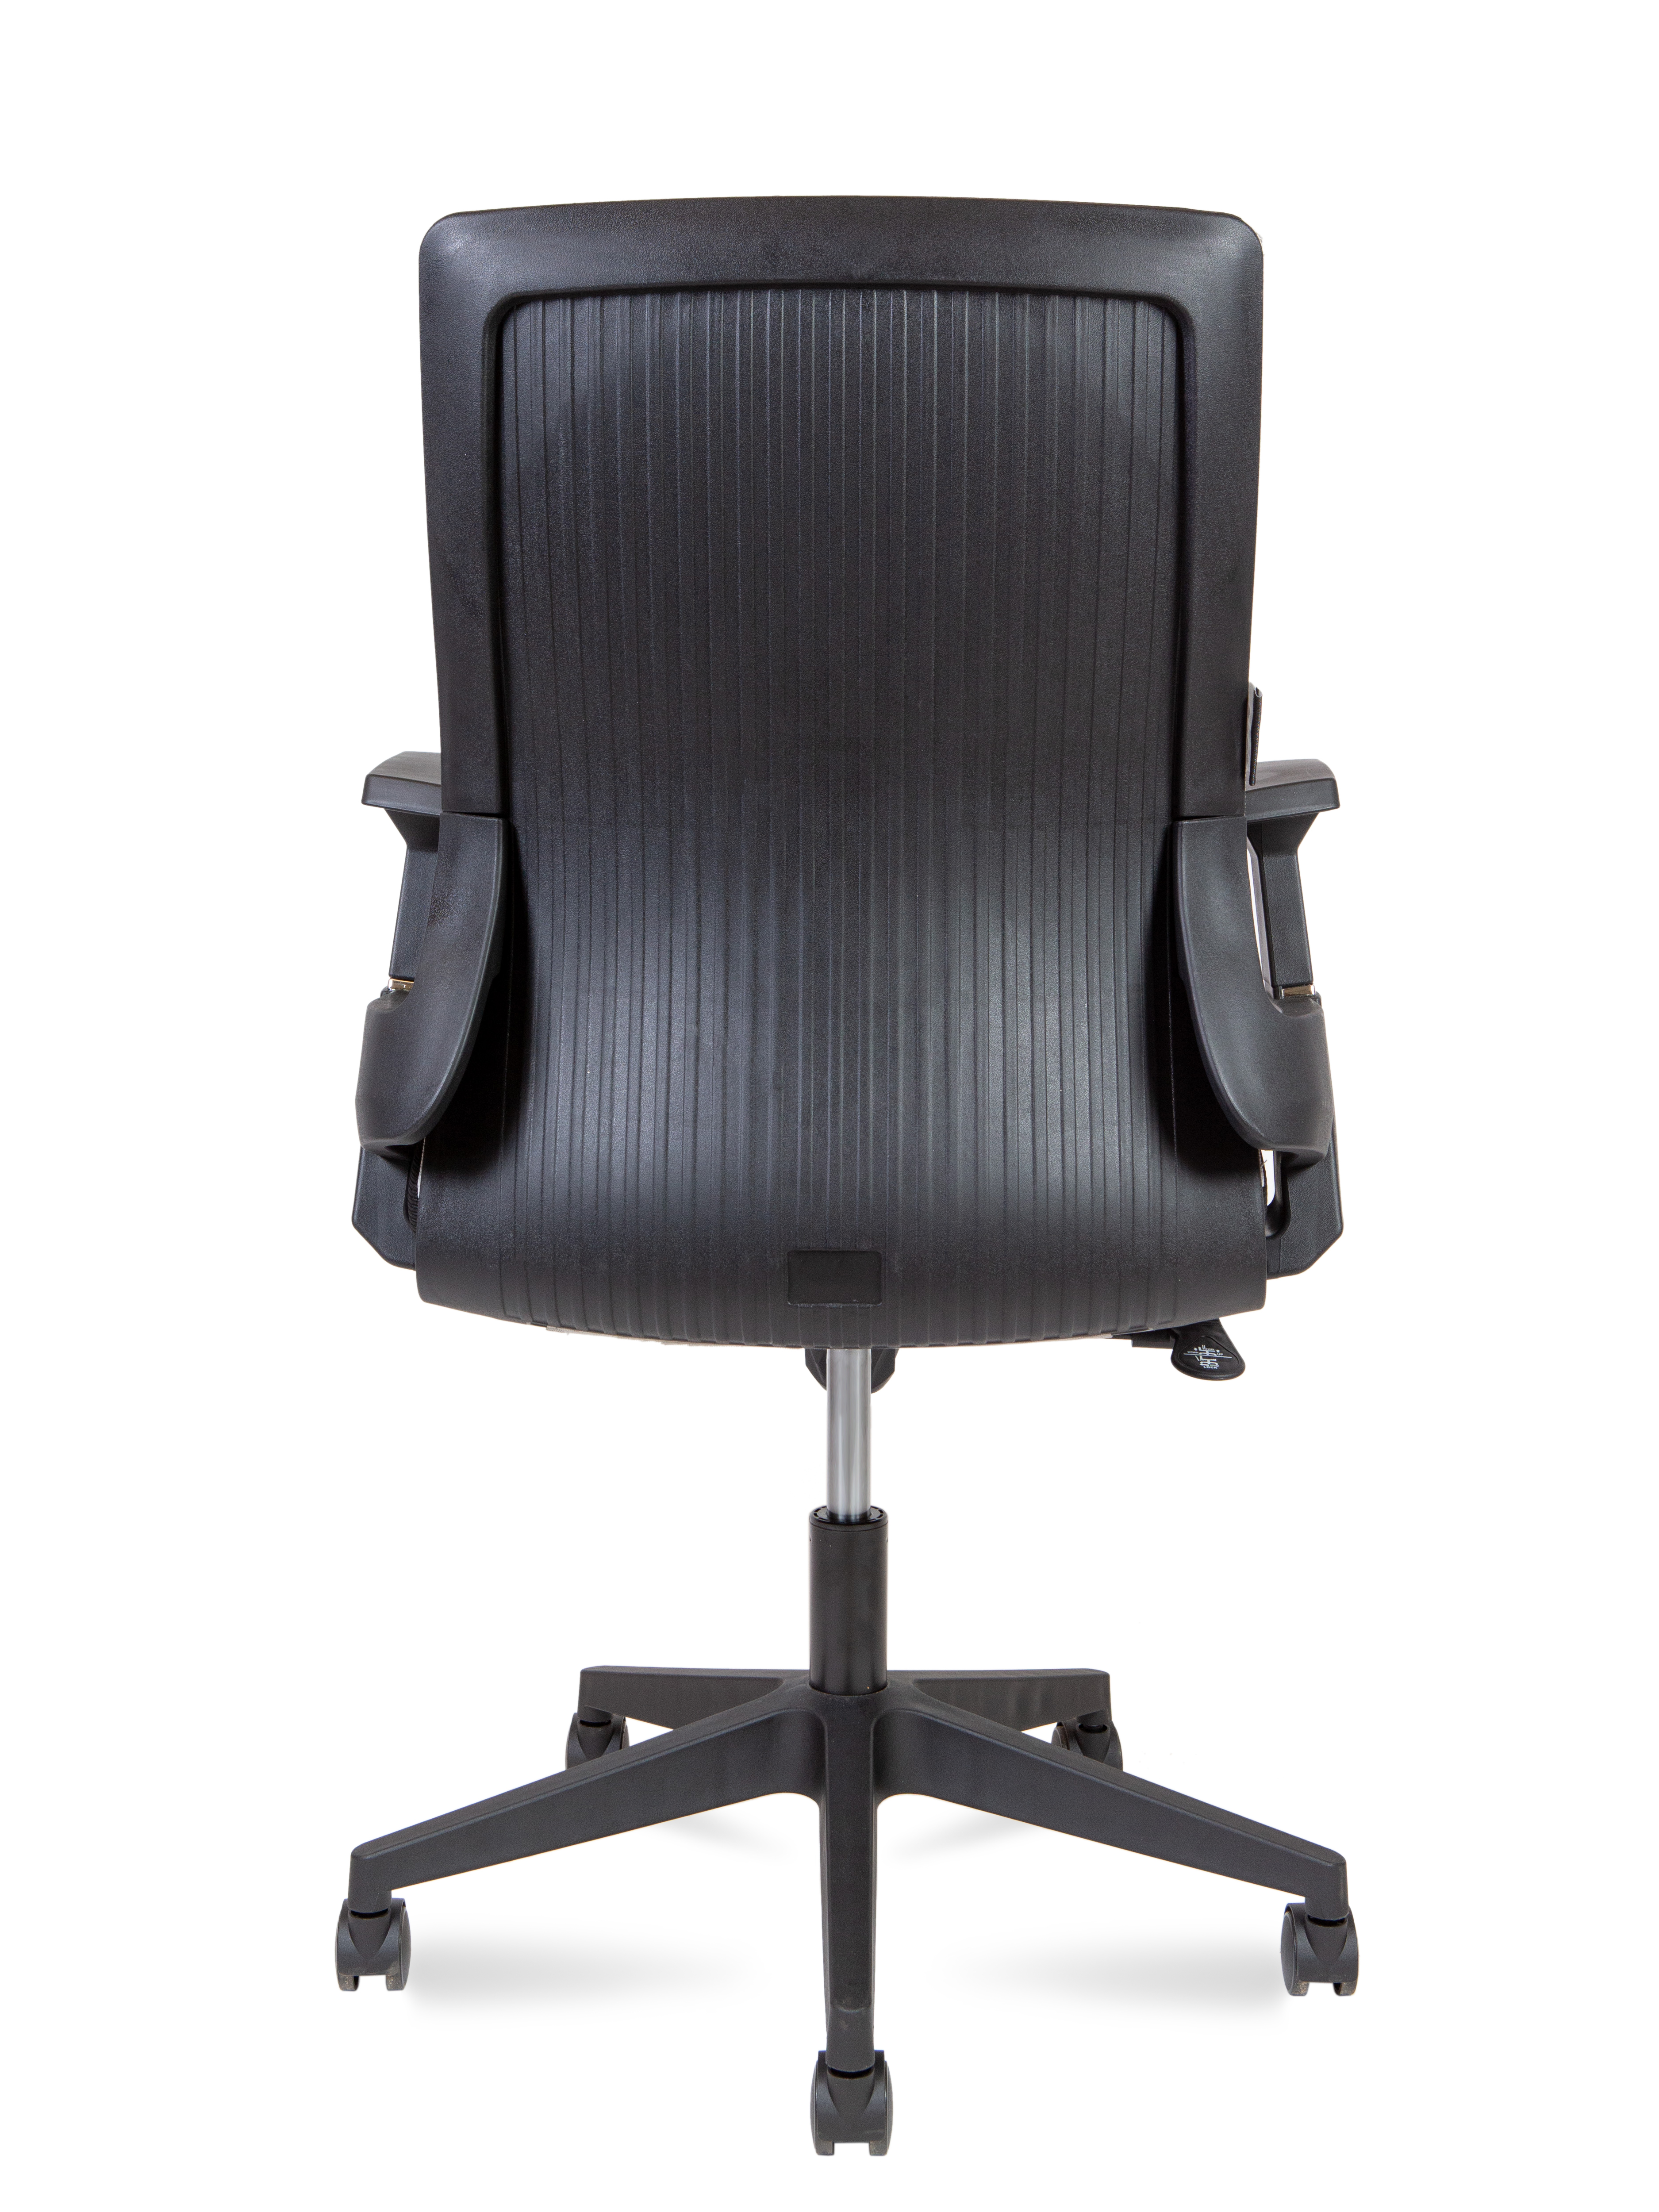 Кресло офисное  Norden  / Terra LB / черный пластик / серая сетка / черная ткань